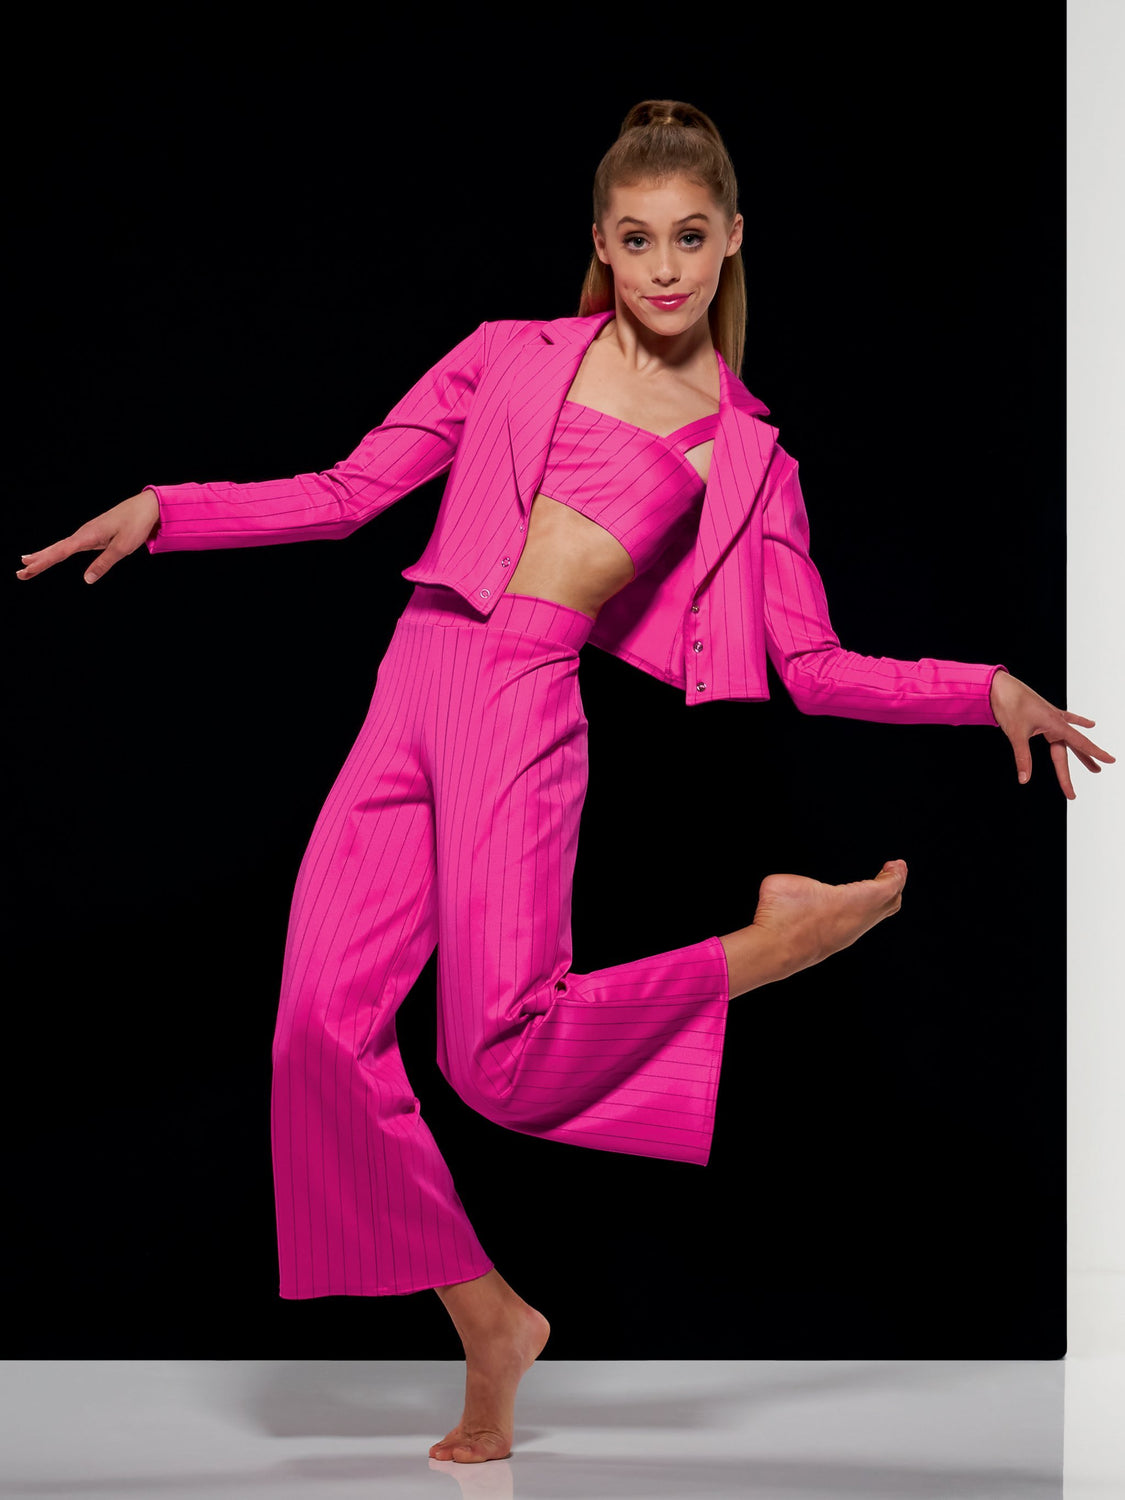 Diva's Pink Bra, Thong, And Tail-Skirt Mambo Salsa Dance Set